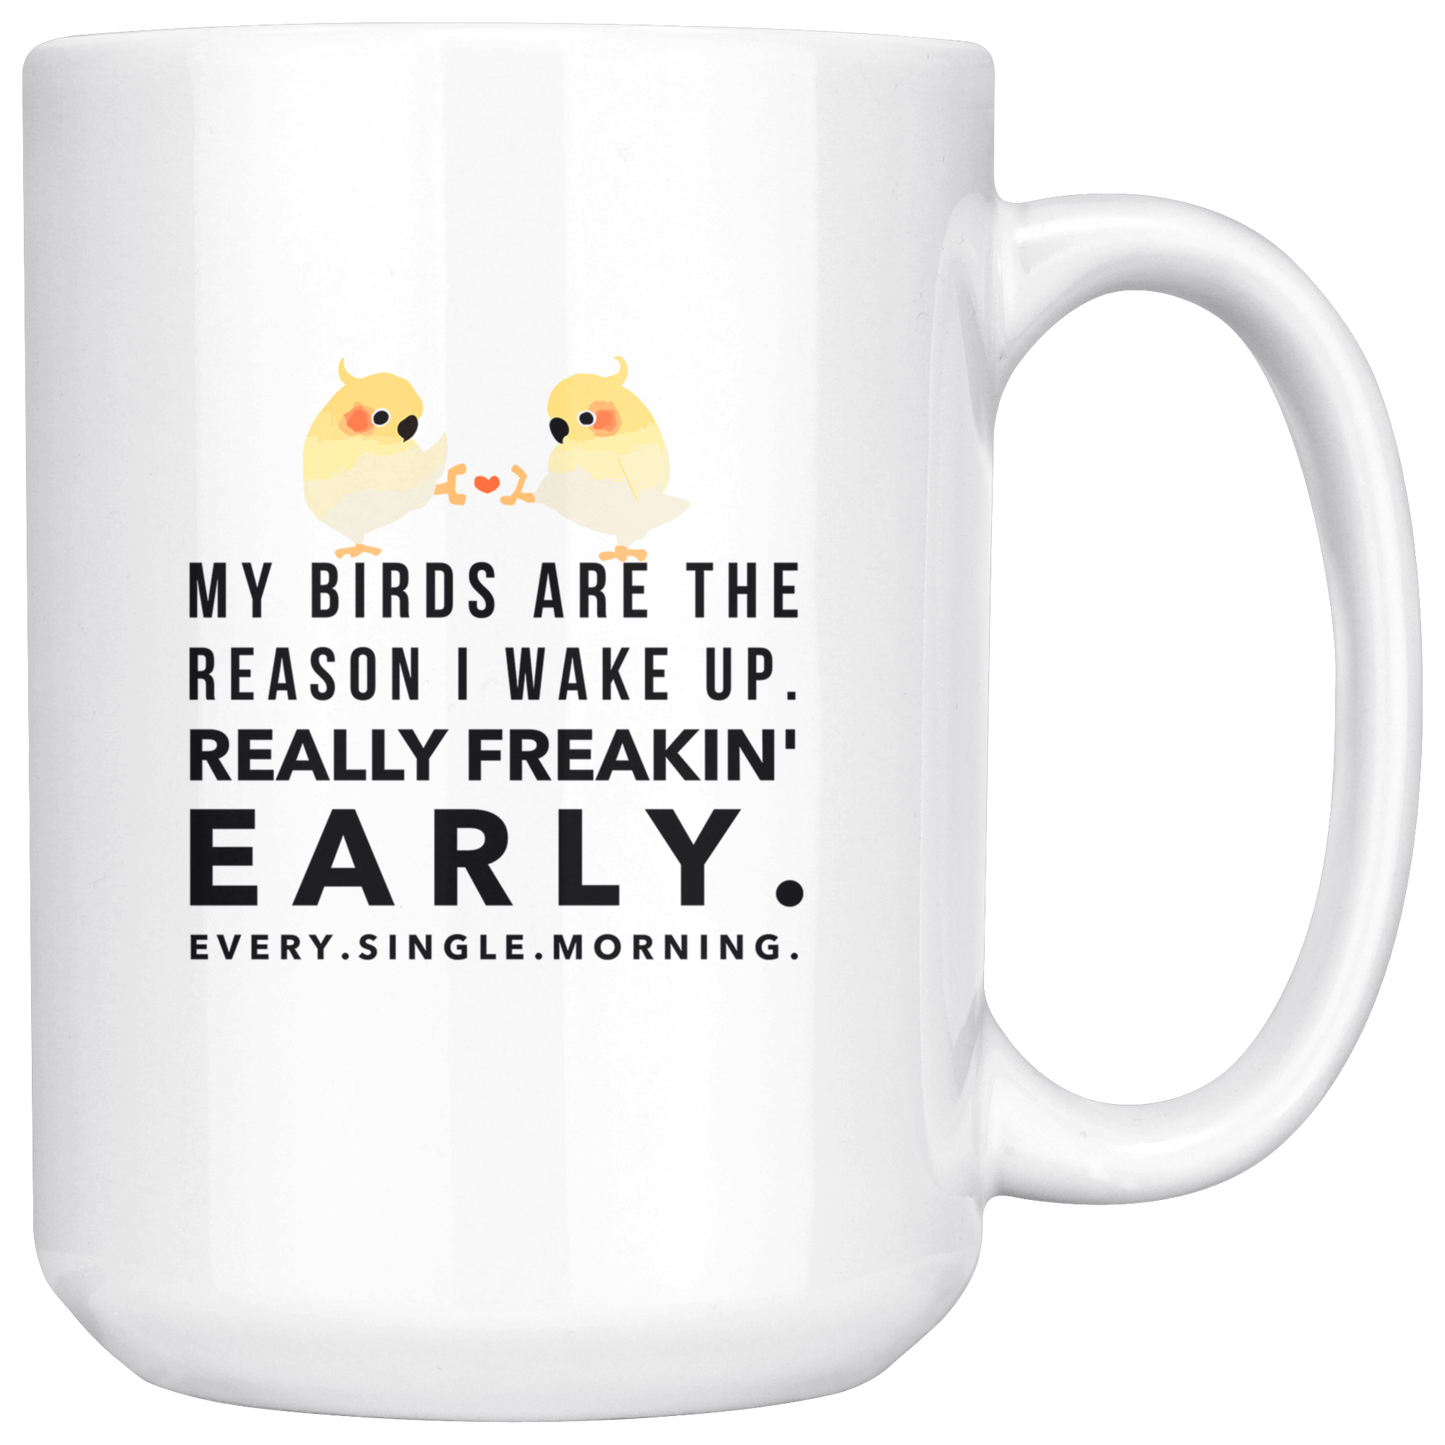 My birds mug